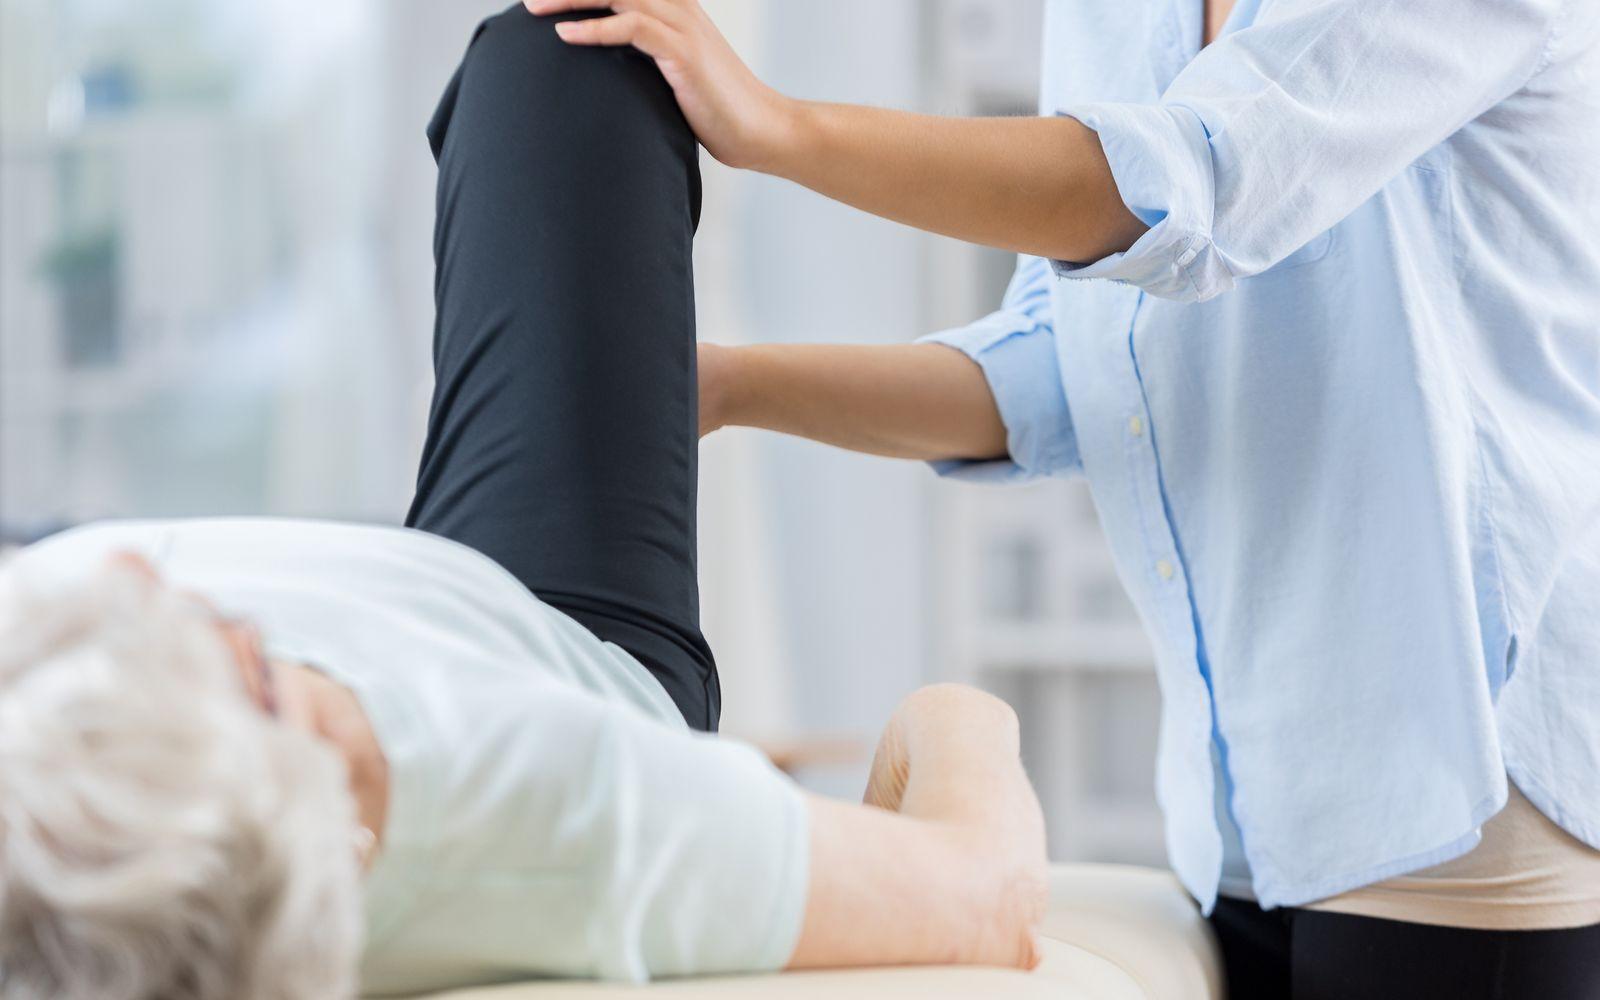 Hilfsmittel: Eine Seniorin erhält eine Behandlung am Knie